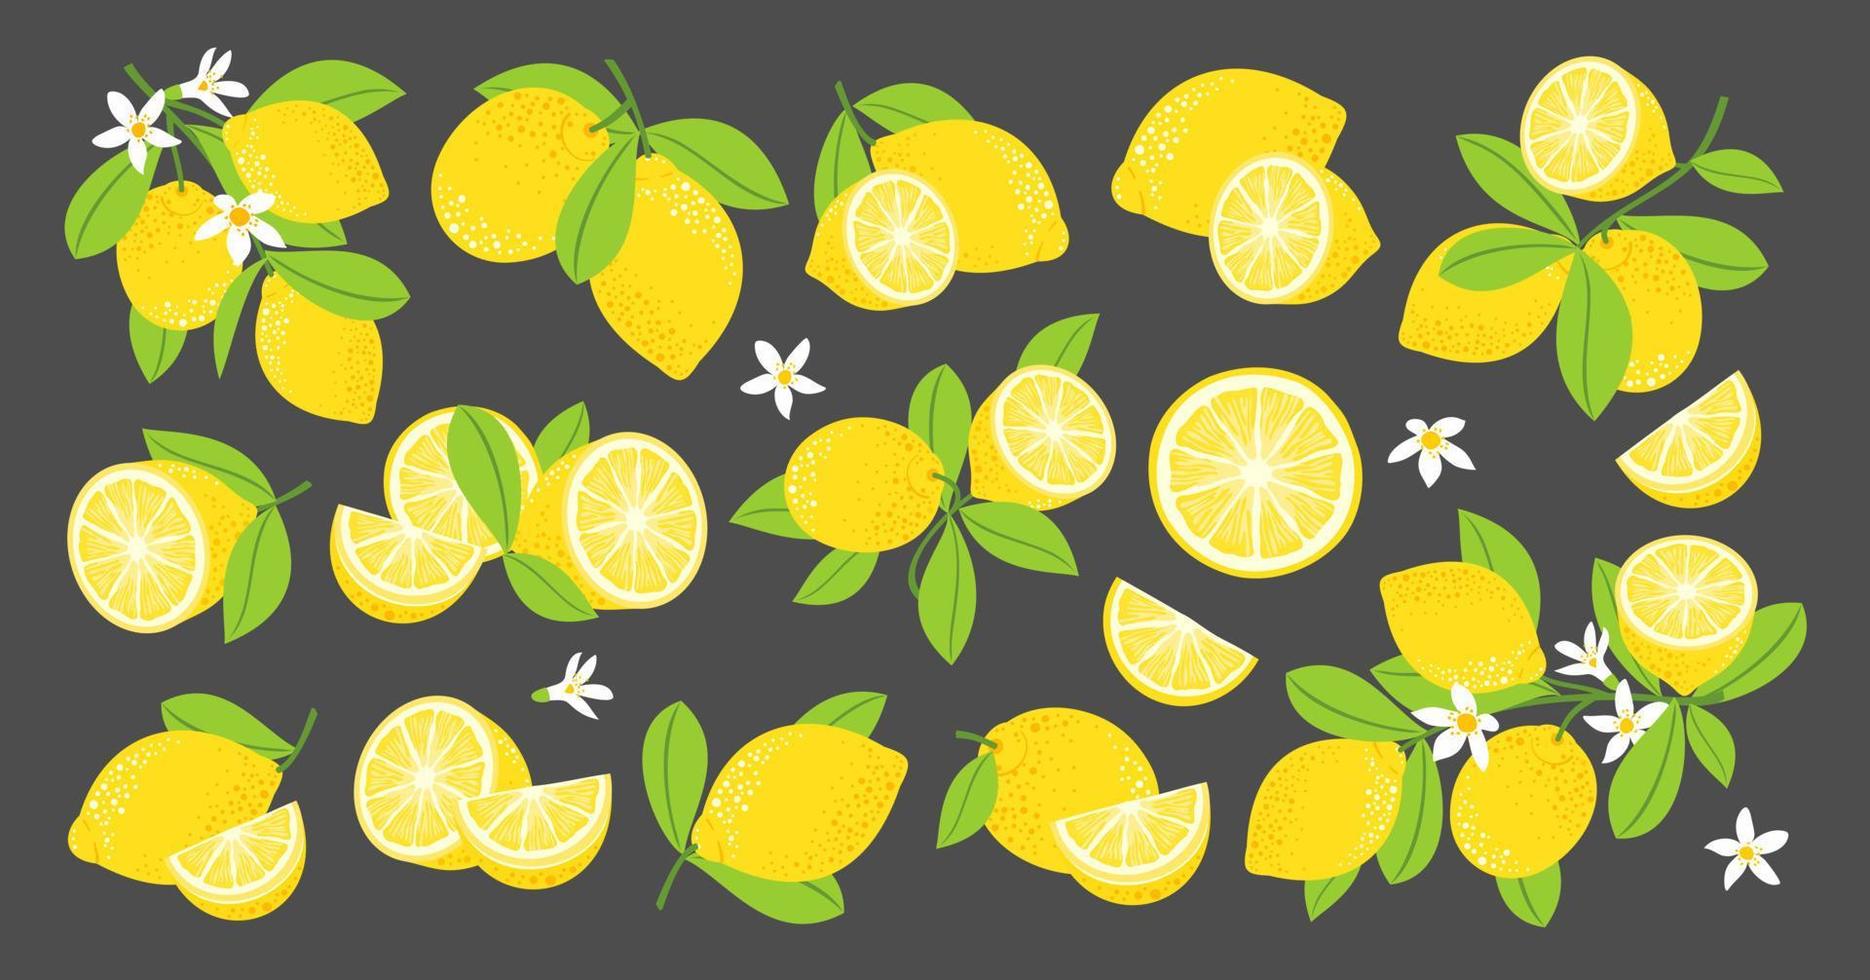 Zitronen-Vektor-Set. Zitronen blühende Zweige. Zitronenfrüchte, Hälften, Blätter, Blüten. vektor